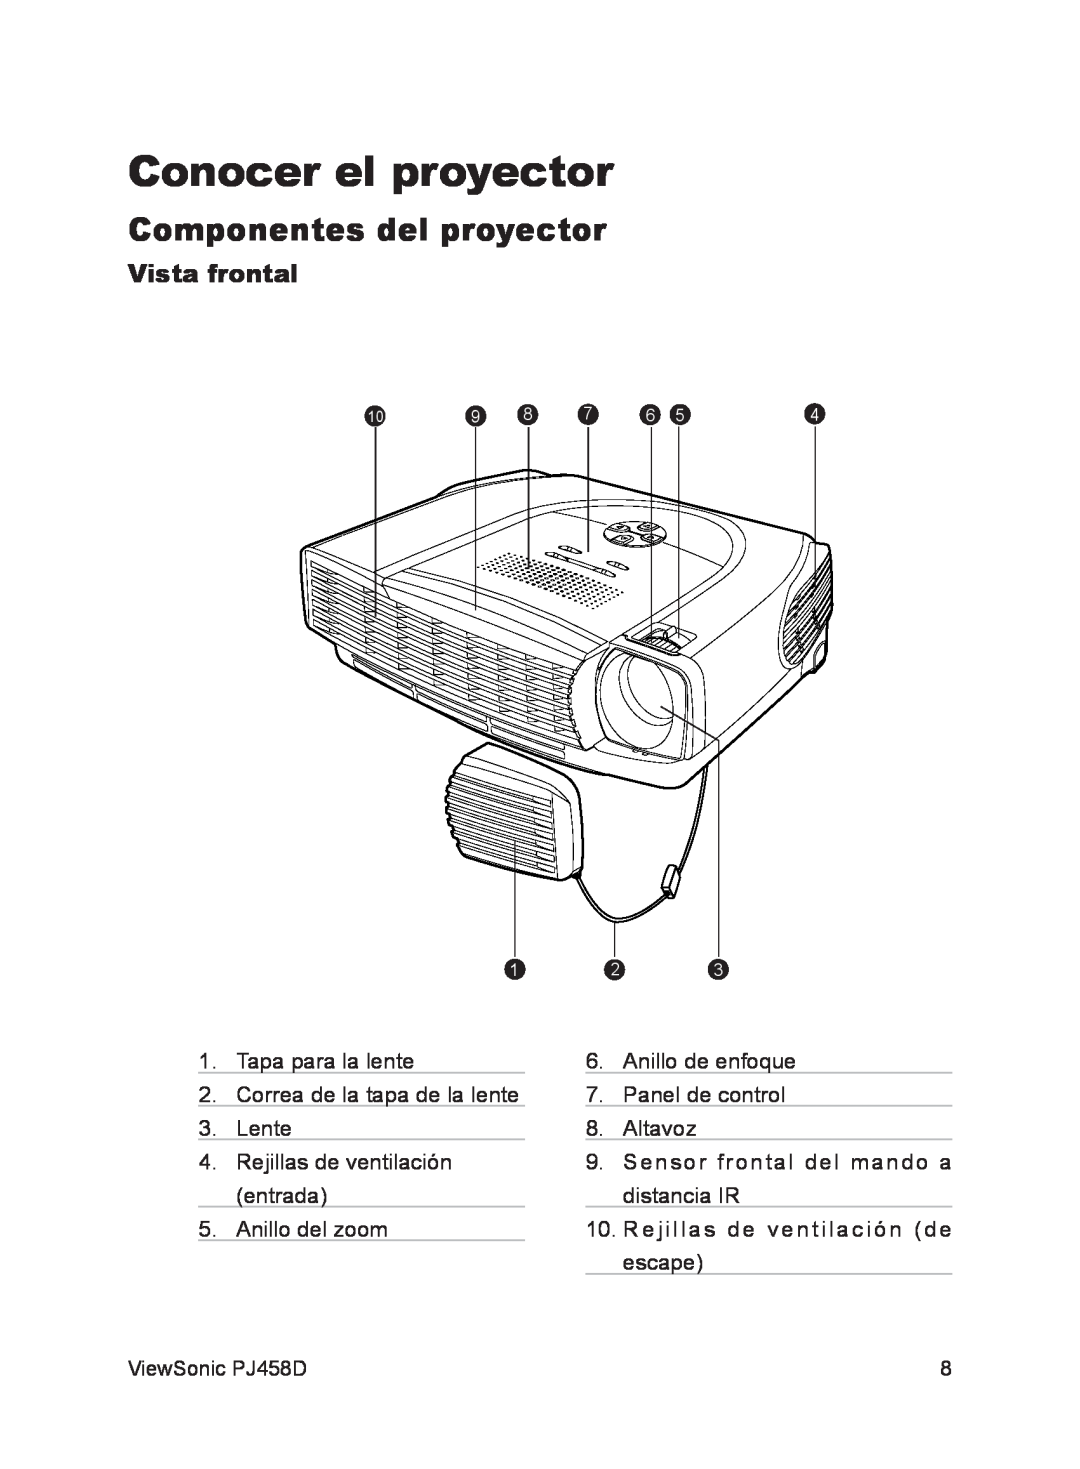 ViewSonic VS10872 manual Conocer el proyector, Componentes del proyector, Vista frontal,    